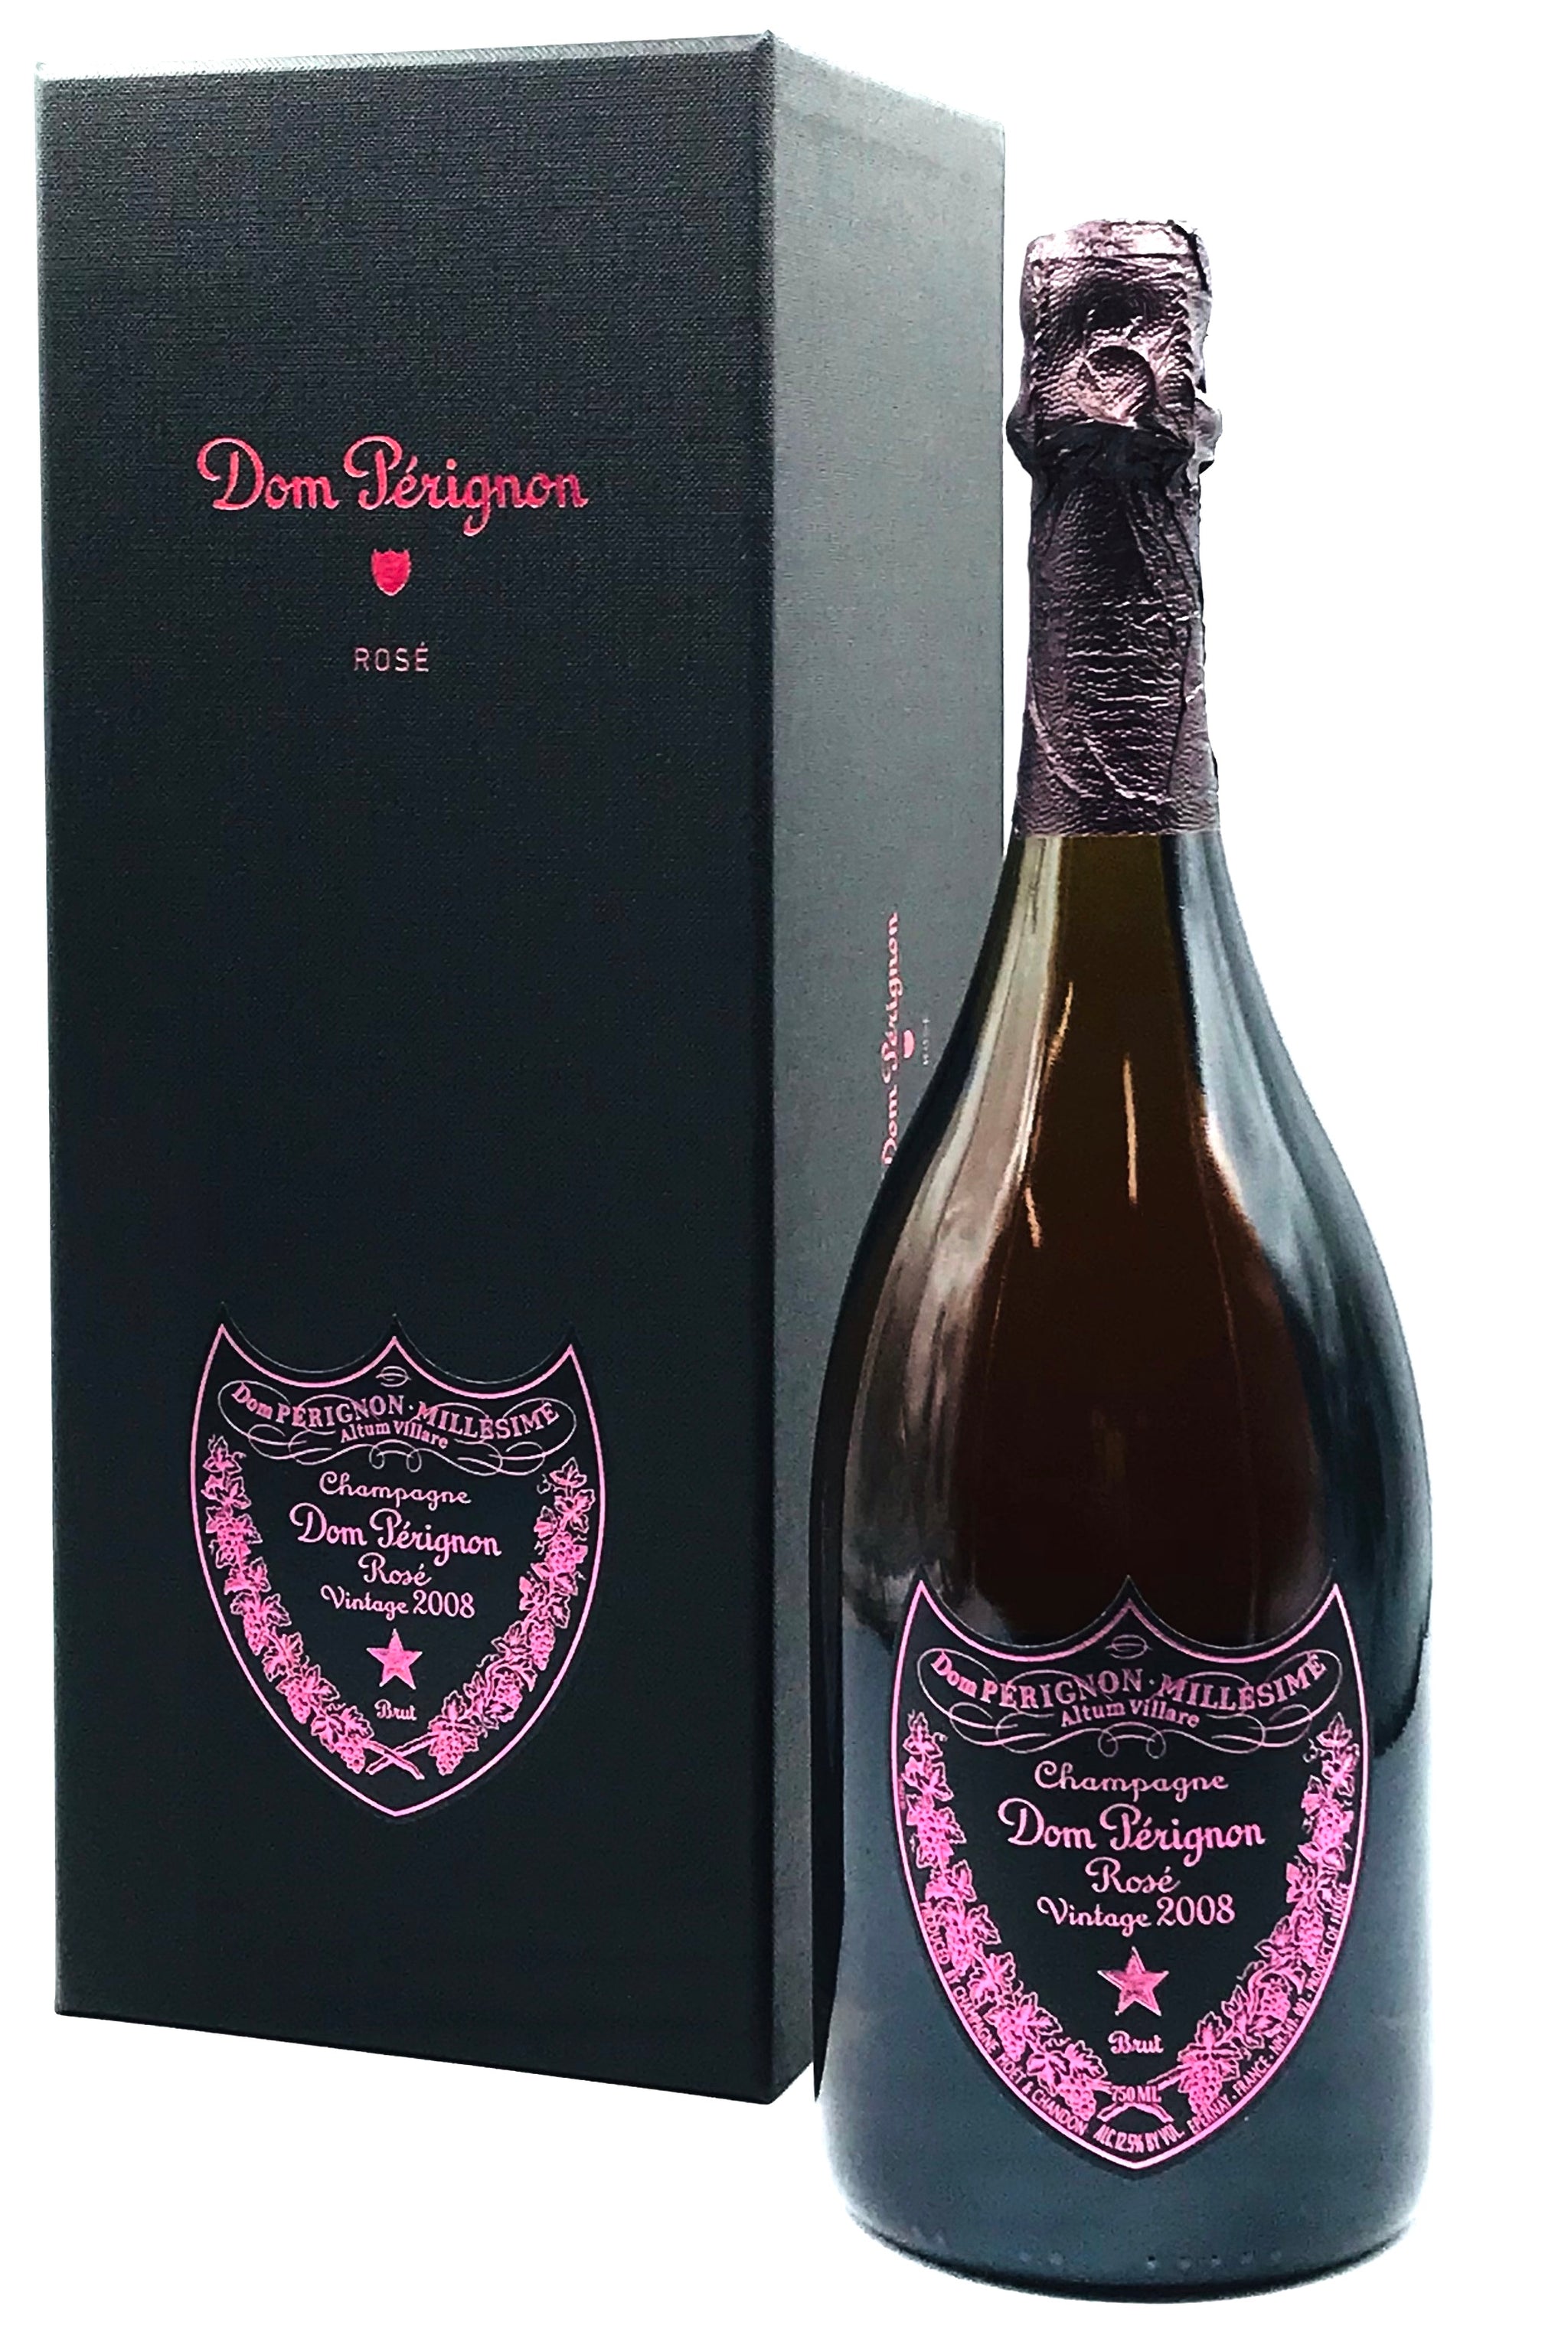 2004 Dom Perignon Champagne 750ml